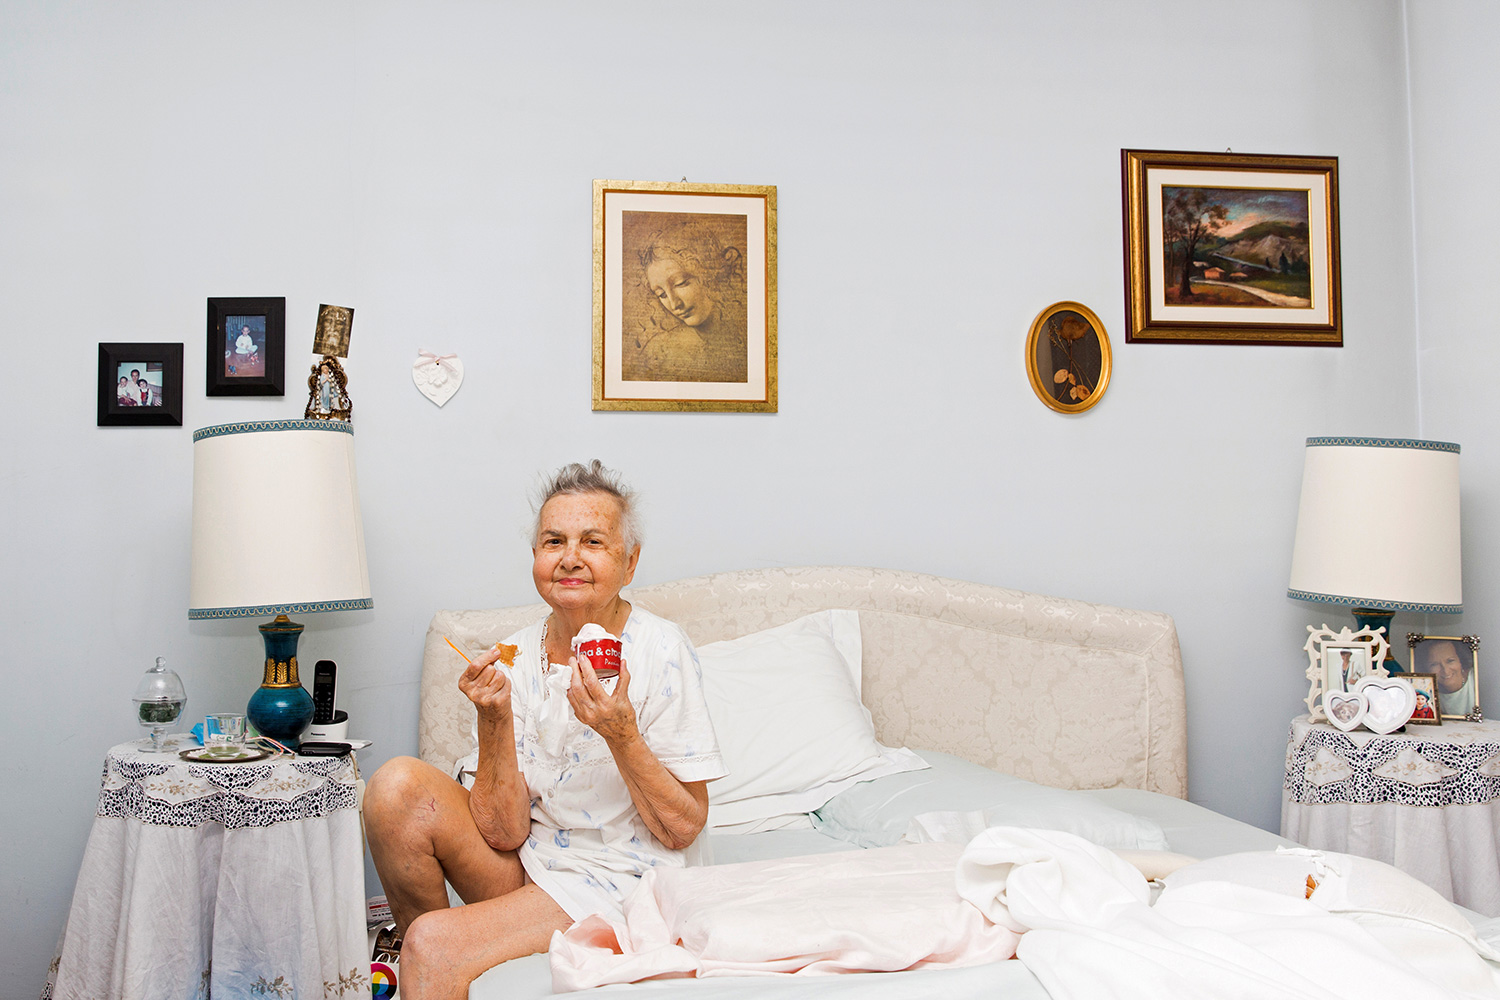 Marisa Vesco come helado en su cama mientras su nieta la fotografía (Foto: Gaia Squarci/Reuters)